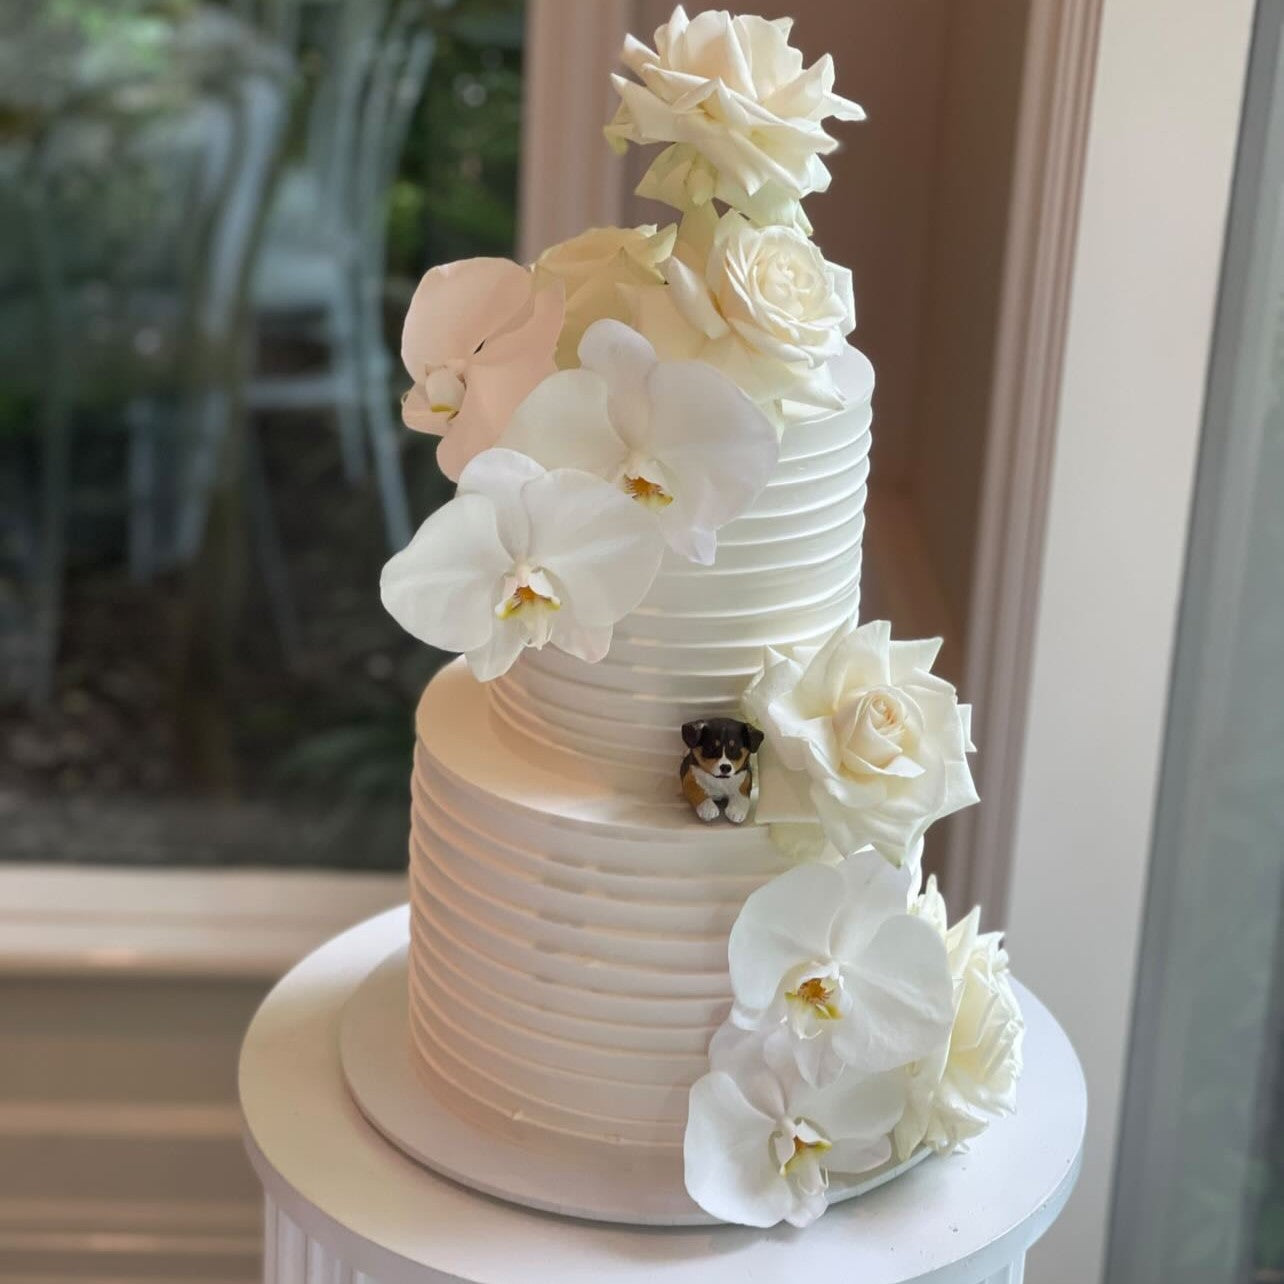 Custom pet wedding cake topper - full body